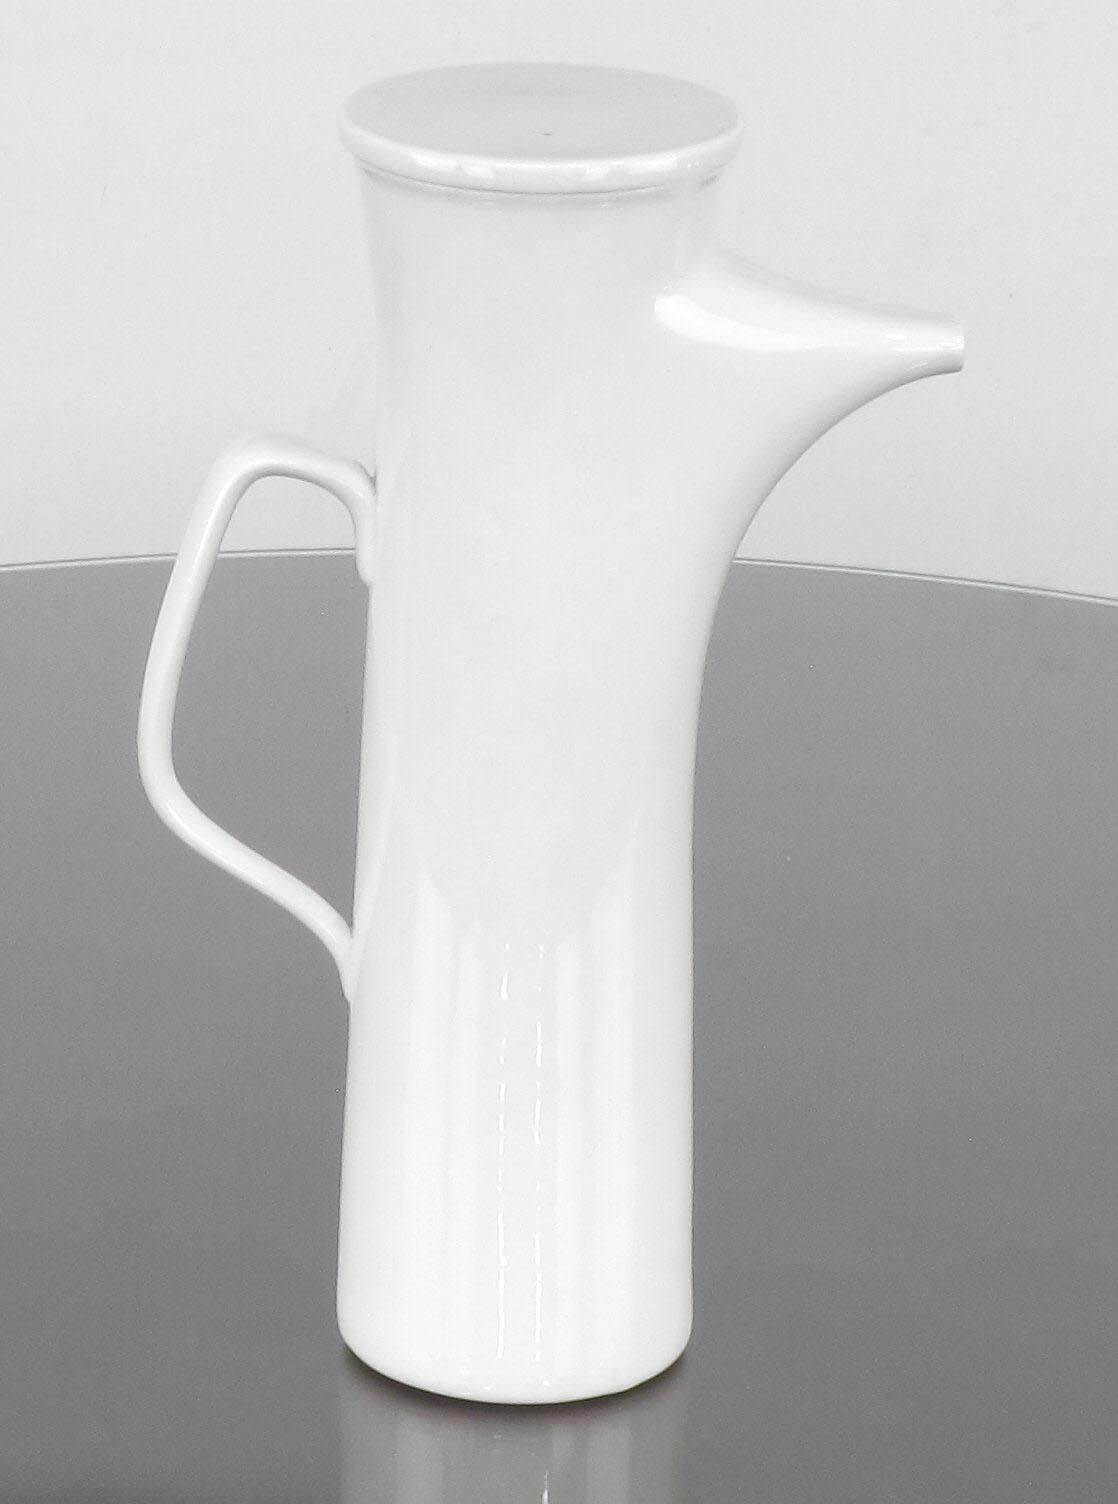 Seltenes komplettes 15-teiliges Kaffee- oder Teeservice, entworfen von La Gardo Tackett für Schmid International, Japan, 1960er Jahre. Die Porzellankeramik-Serie 